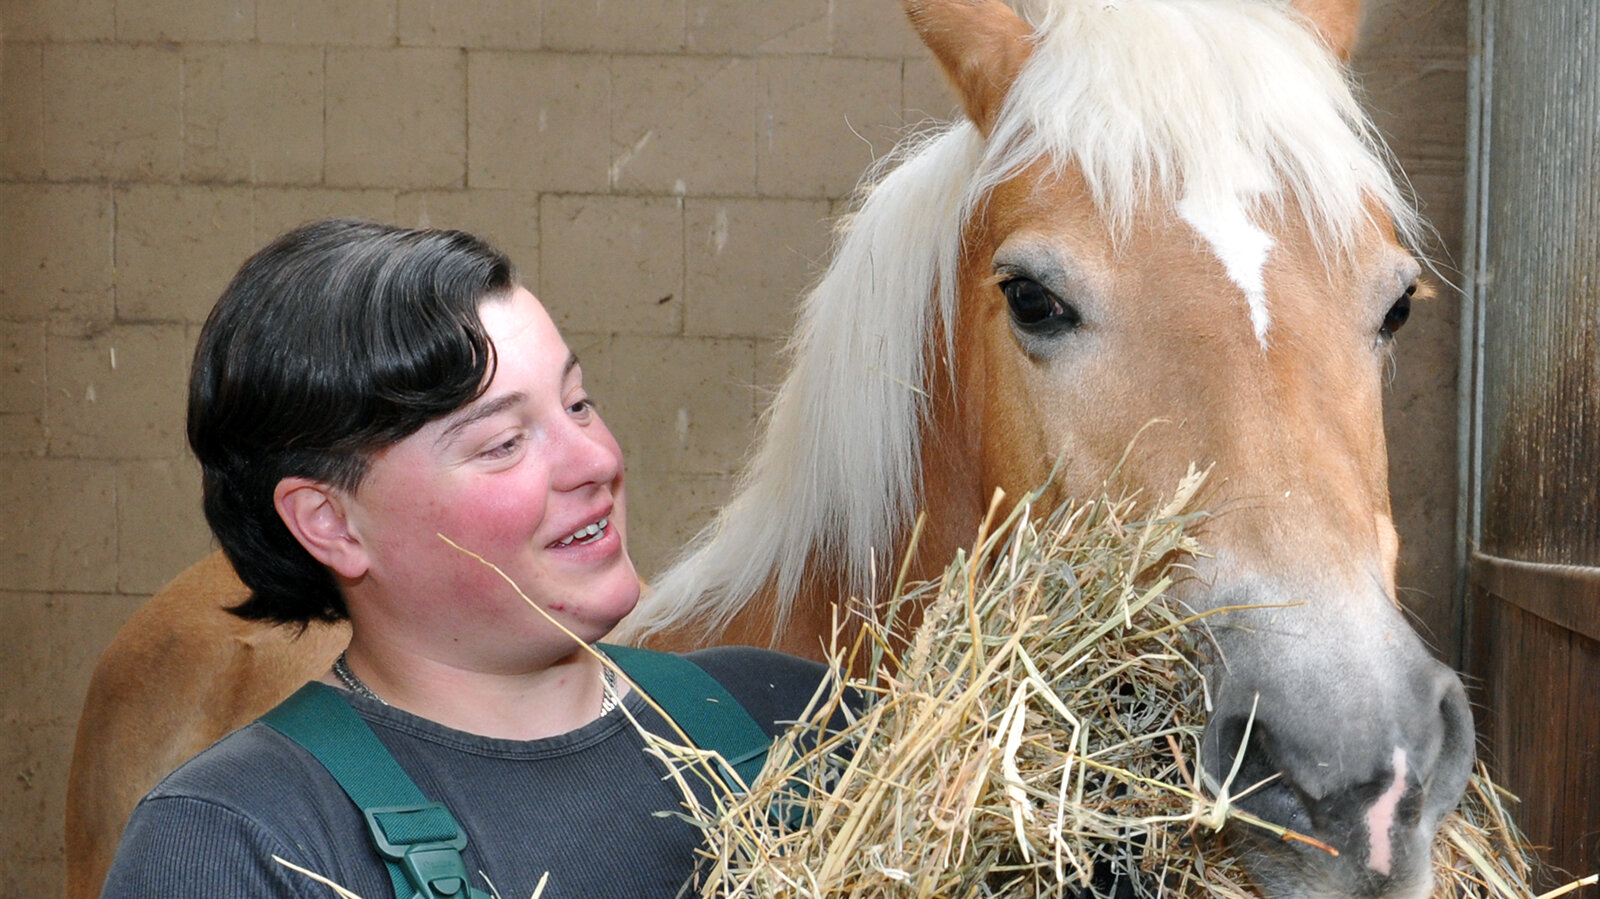 Jennifer füttert ein Pferd mit Heu.